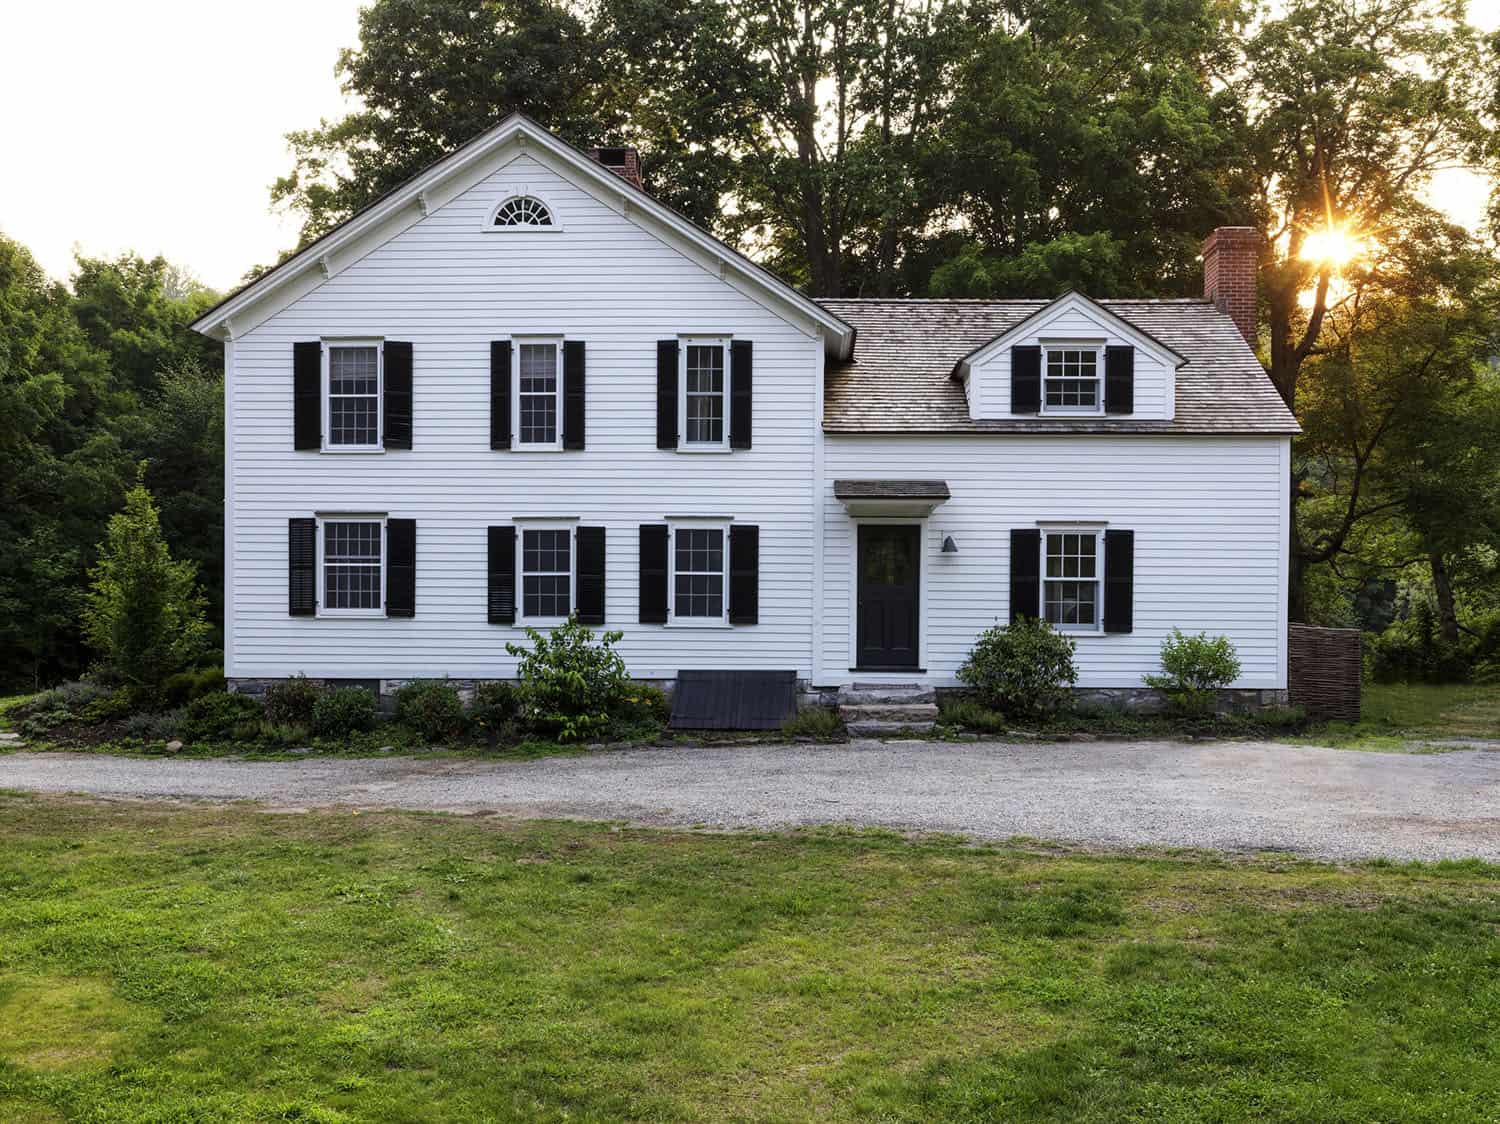 white-farmhouse-exterior